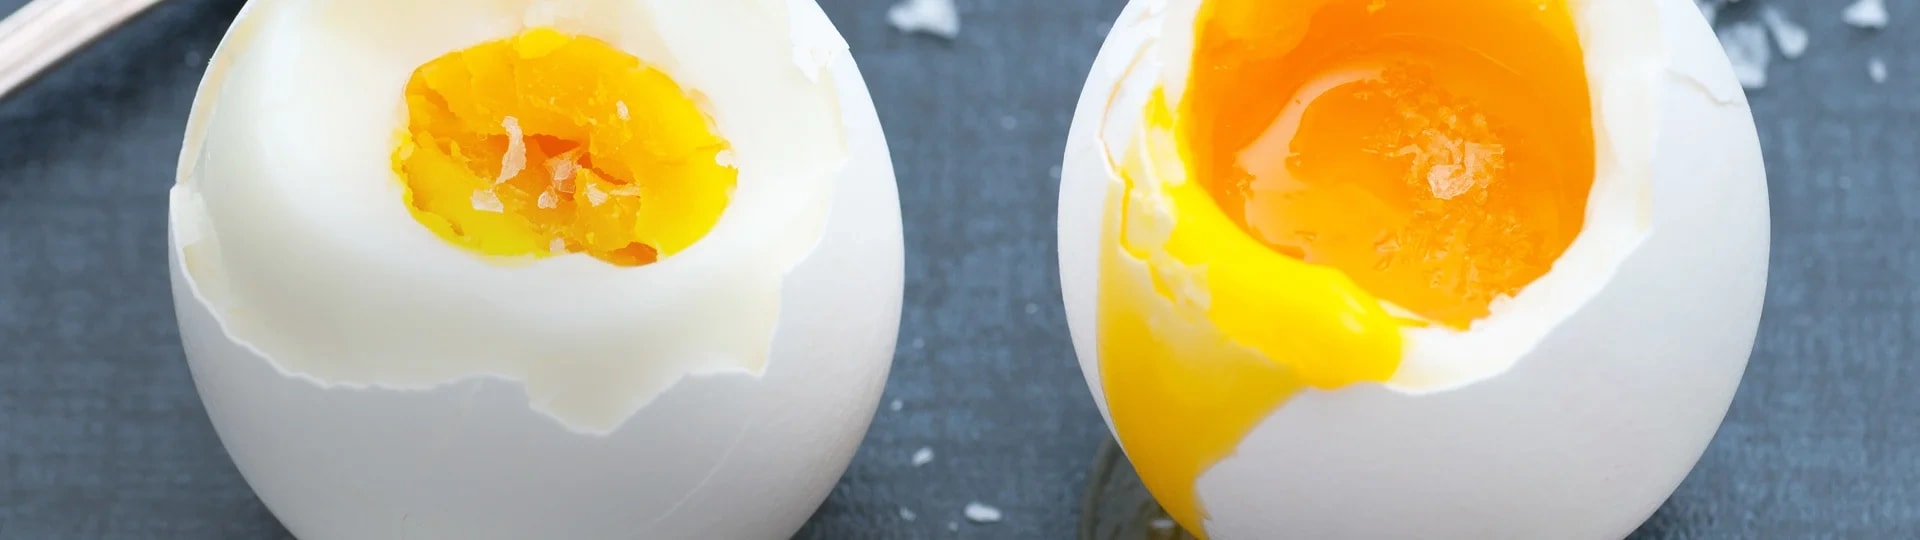 Hur kokar man ägg? Här är bästa sättet! | ICA Buffé